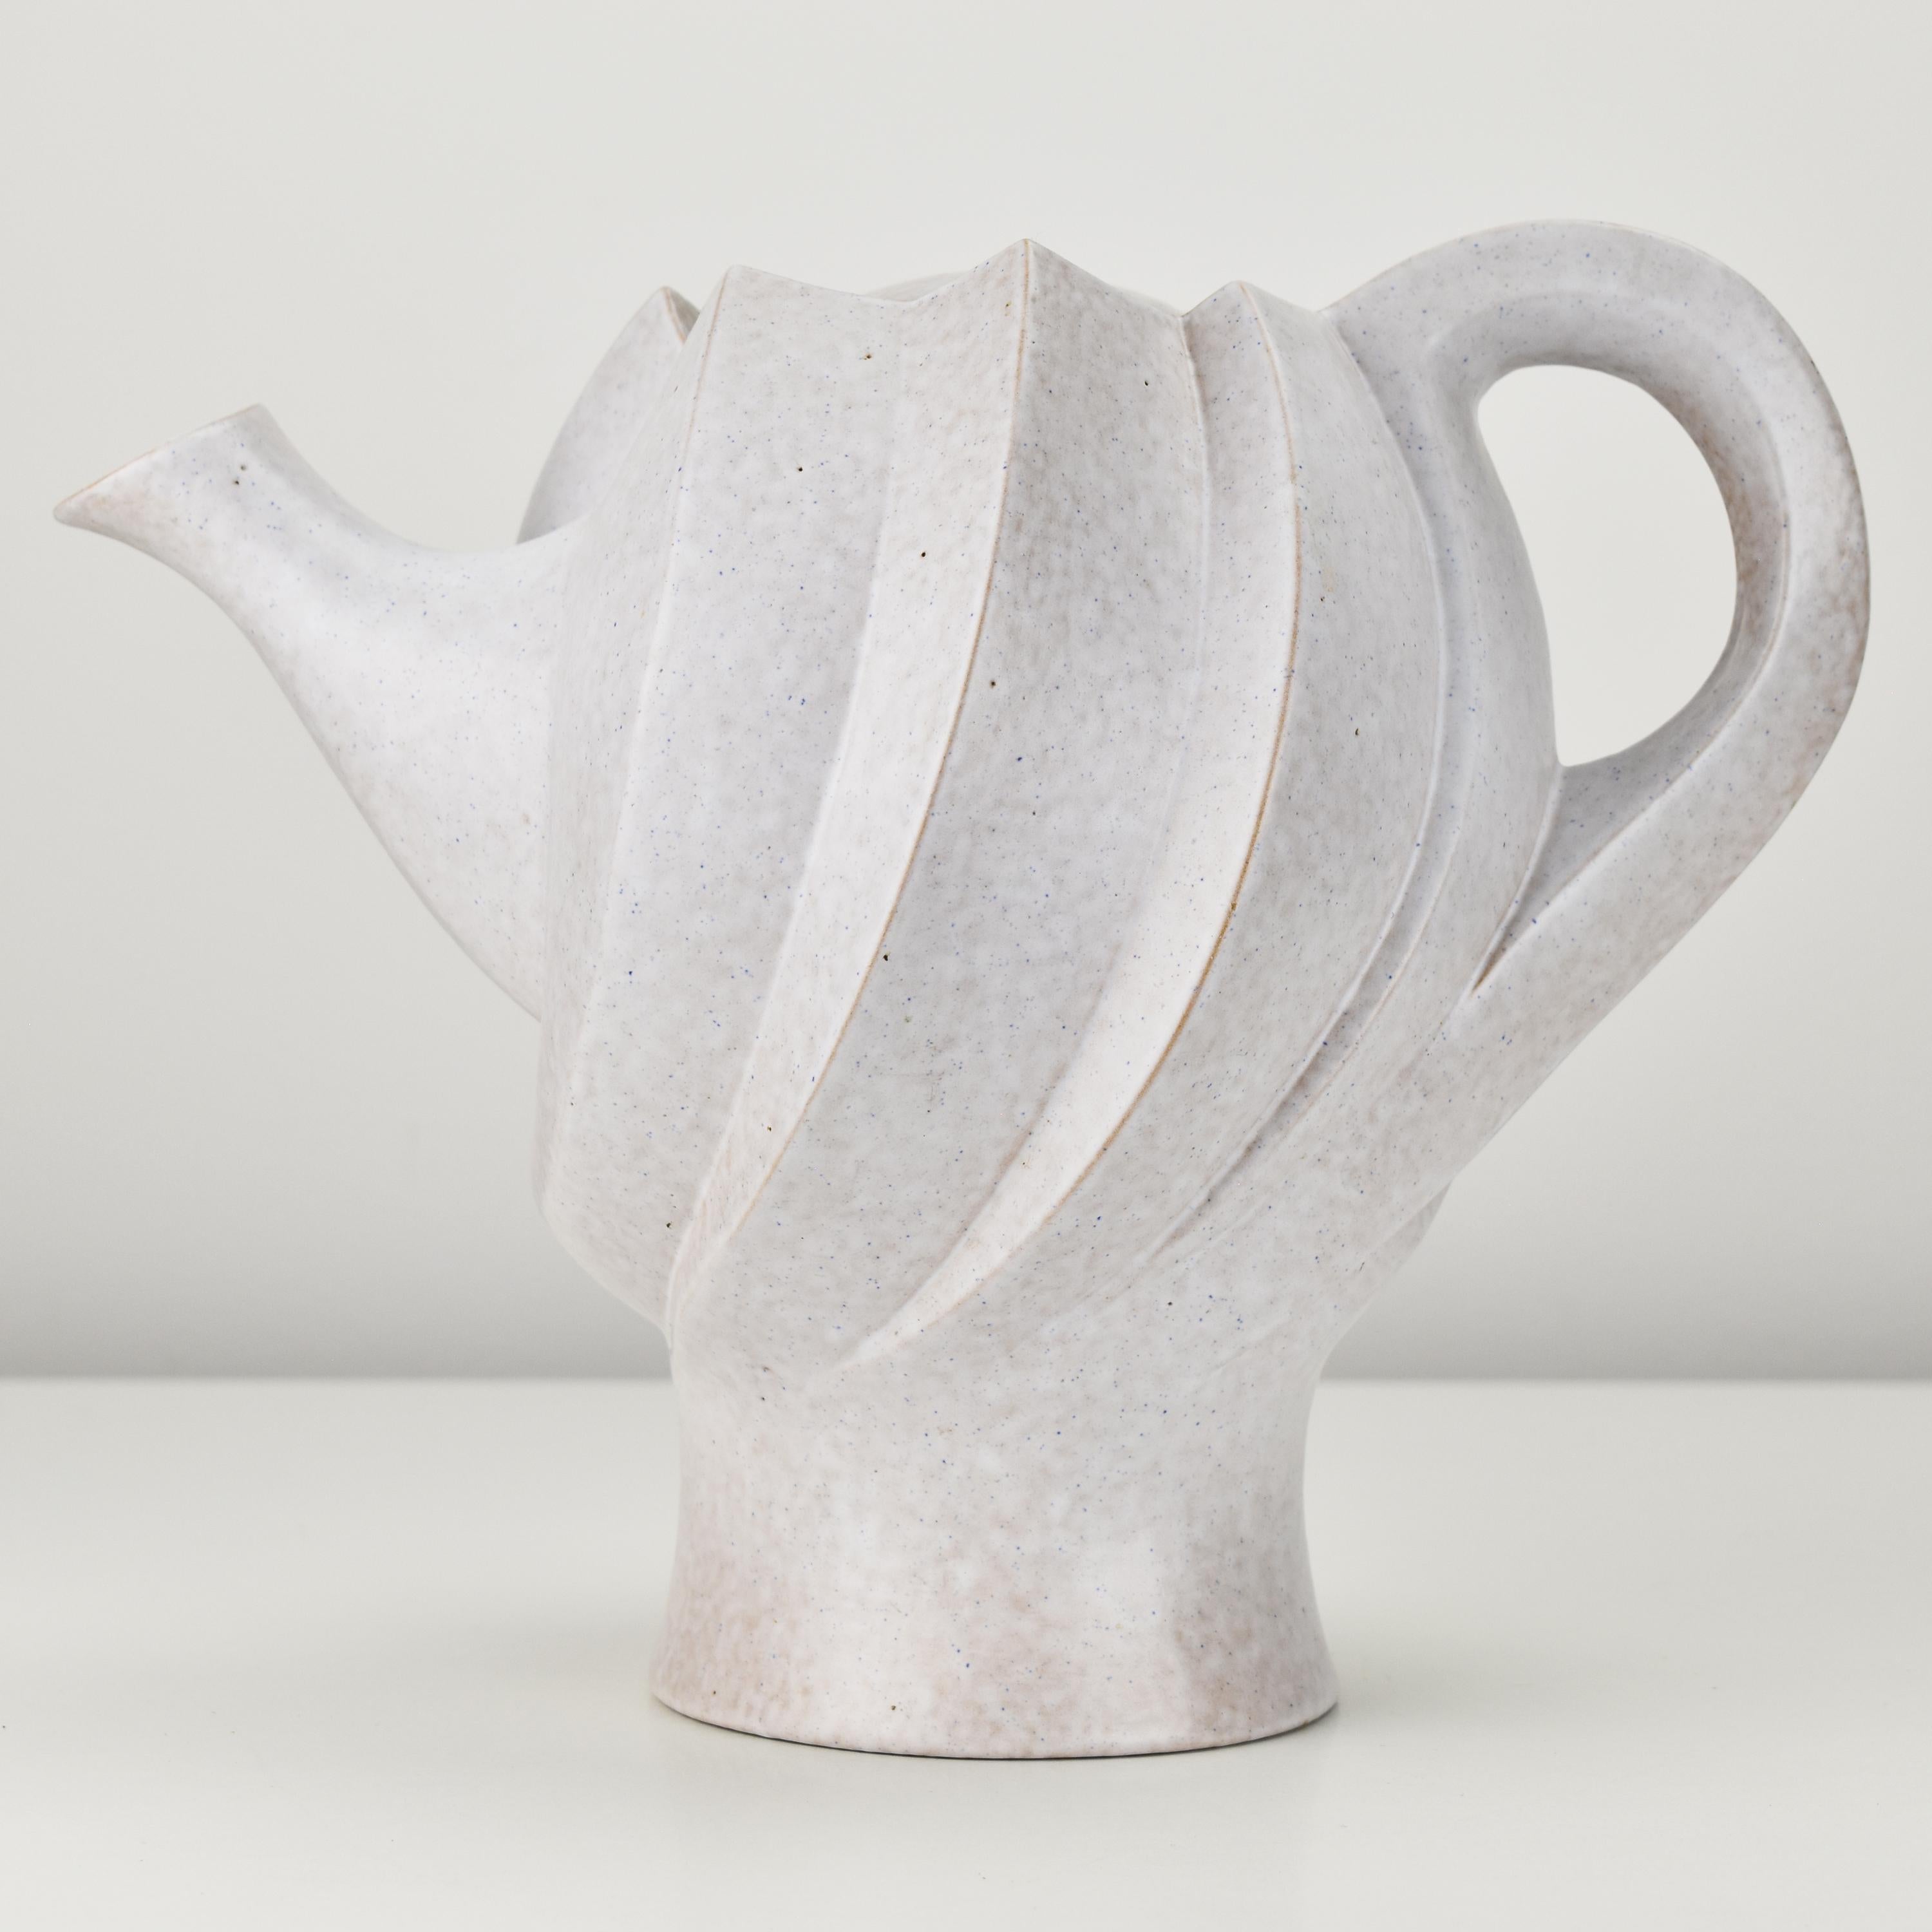 Eine ungewöhnlich skulpturale, segmentierte Teekanne und ein bemerkenswertes Stück Keramikkunst, das durch sein einzigartiges Design und seinen künstlerischen Ausdruck besticht. Die aus beige glasierter Keramik gefertigte Teekanne strahlt einen